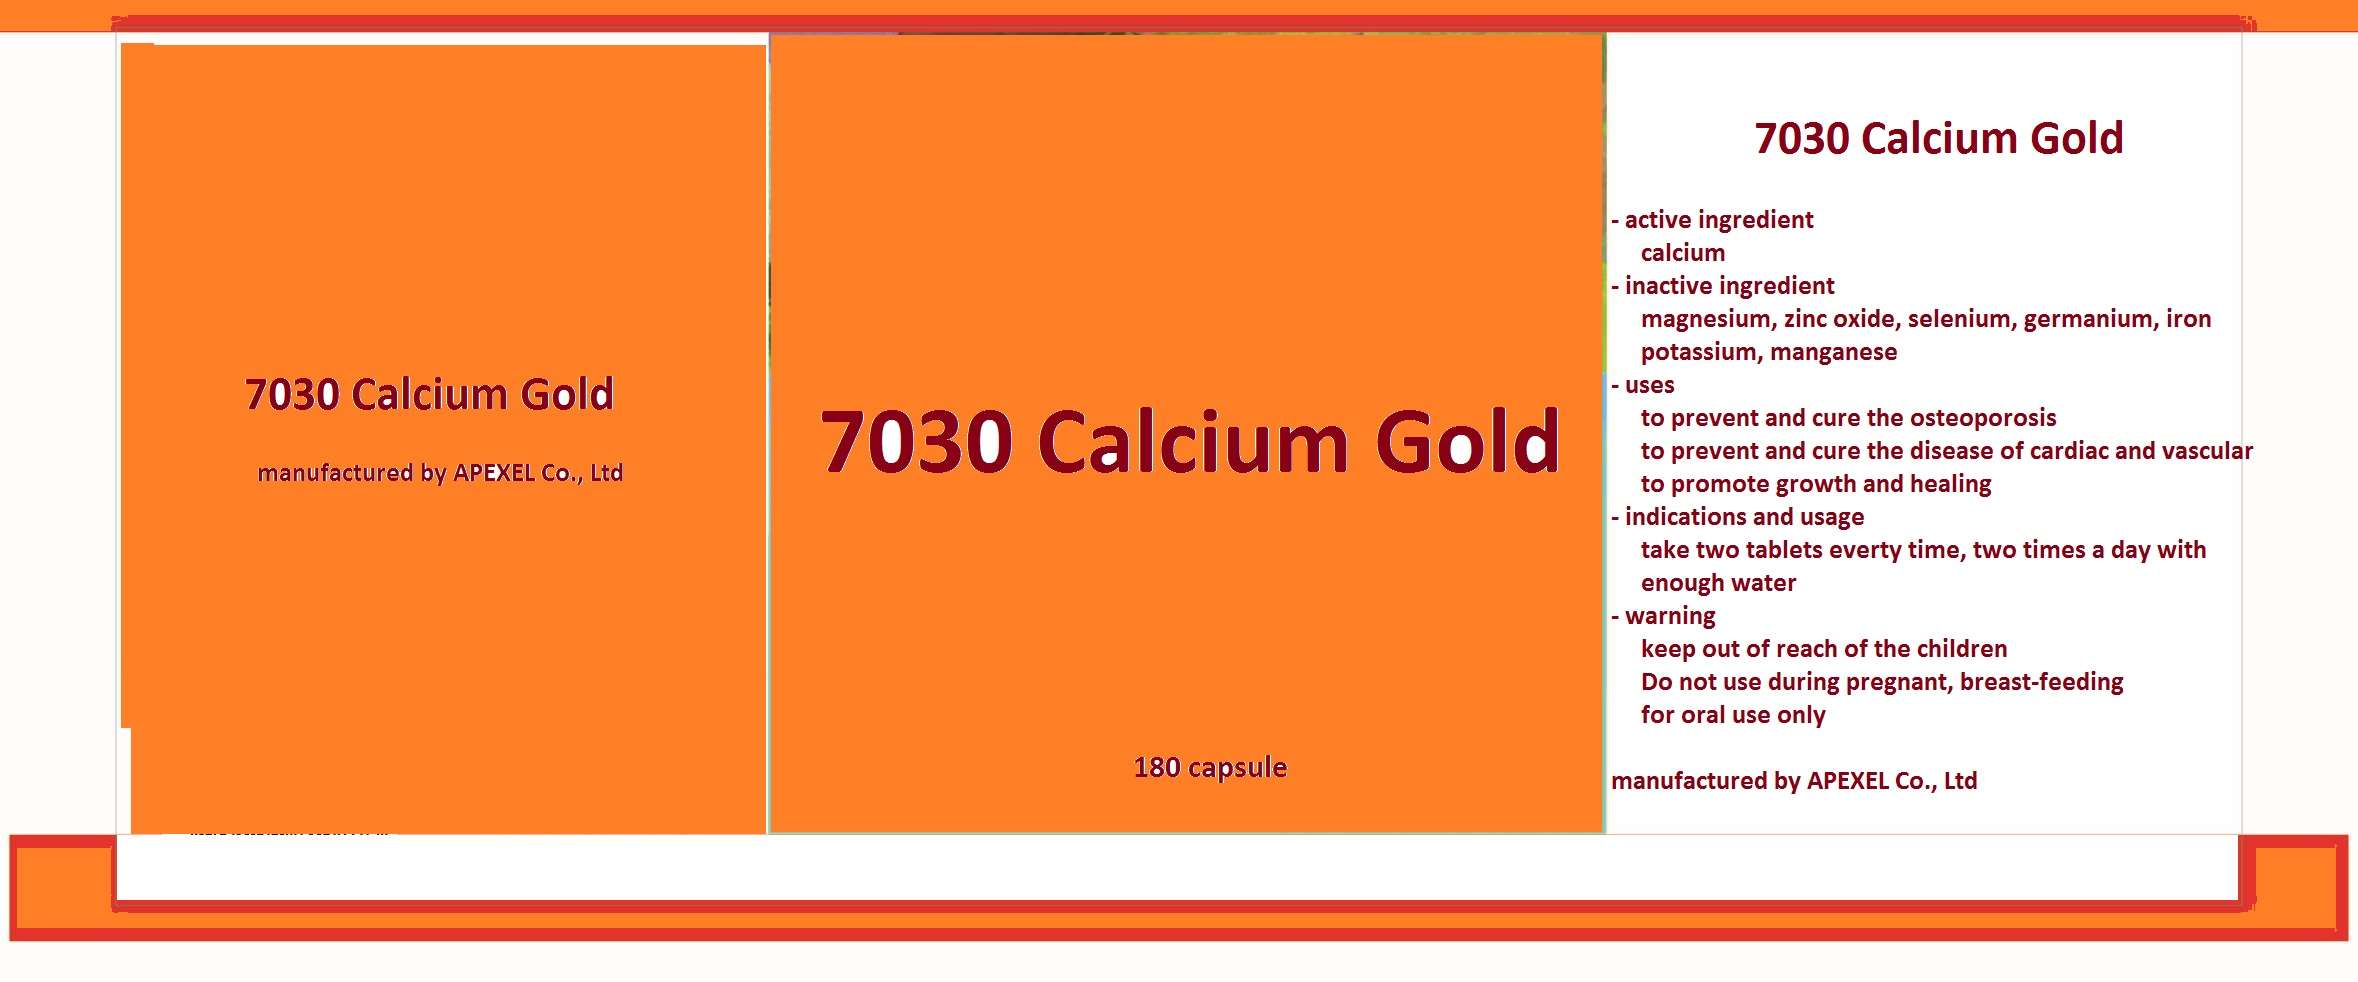 7030 Calcium Gold